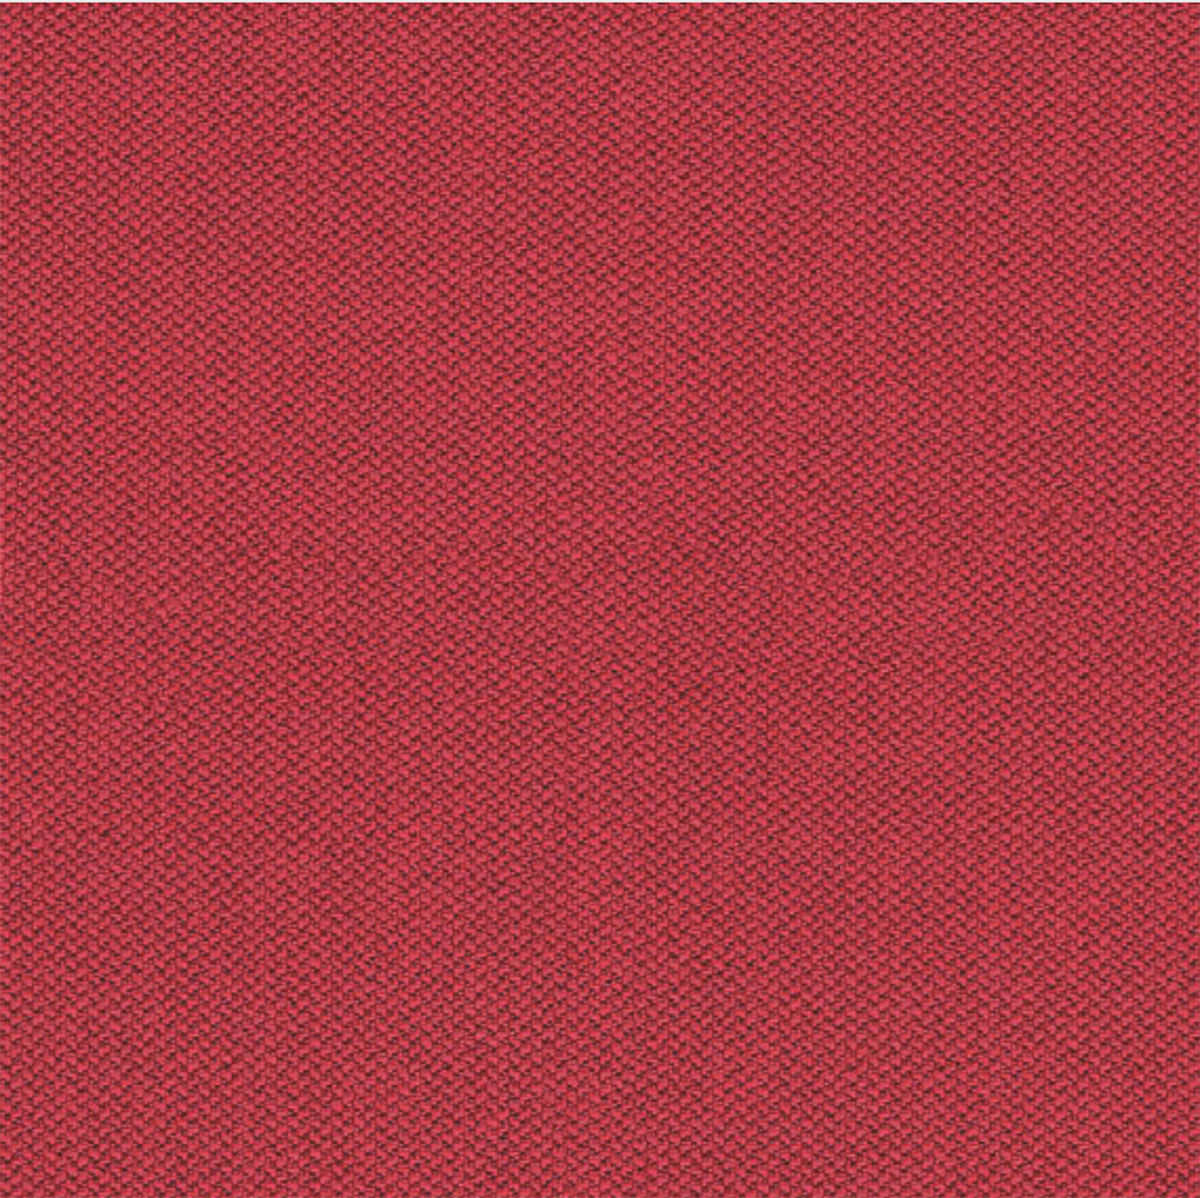 Camira Era Red Fabric [+$92.00]